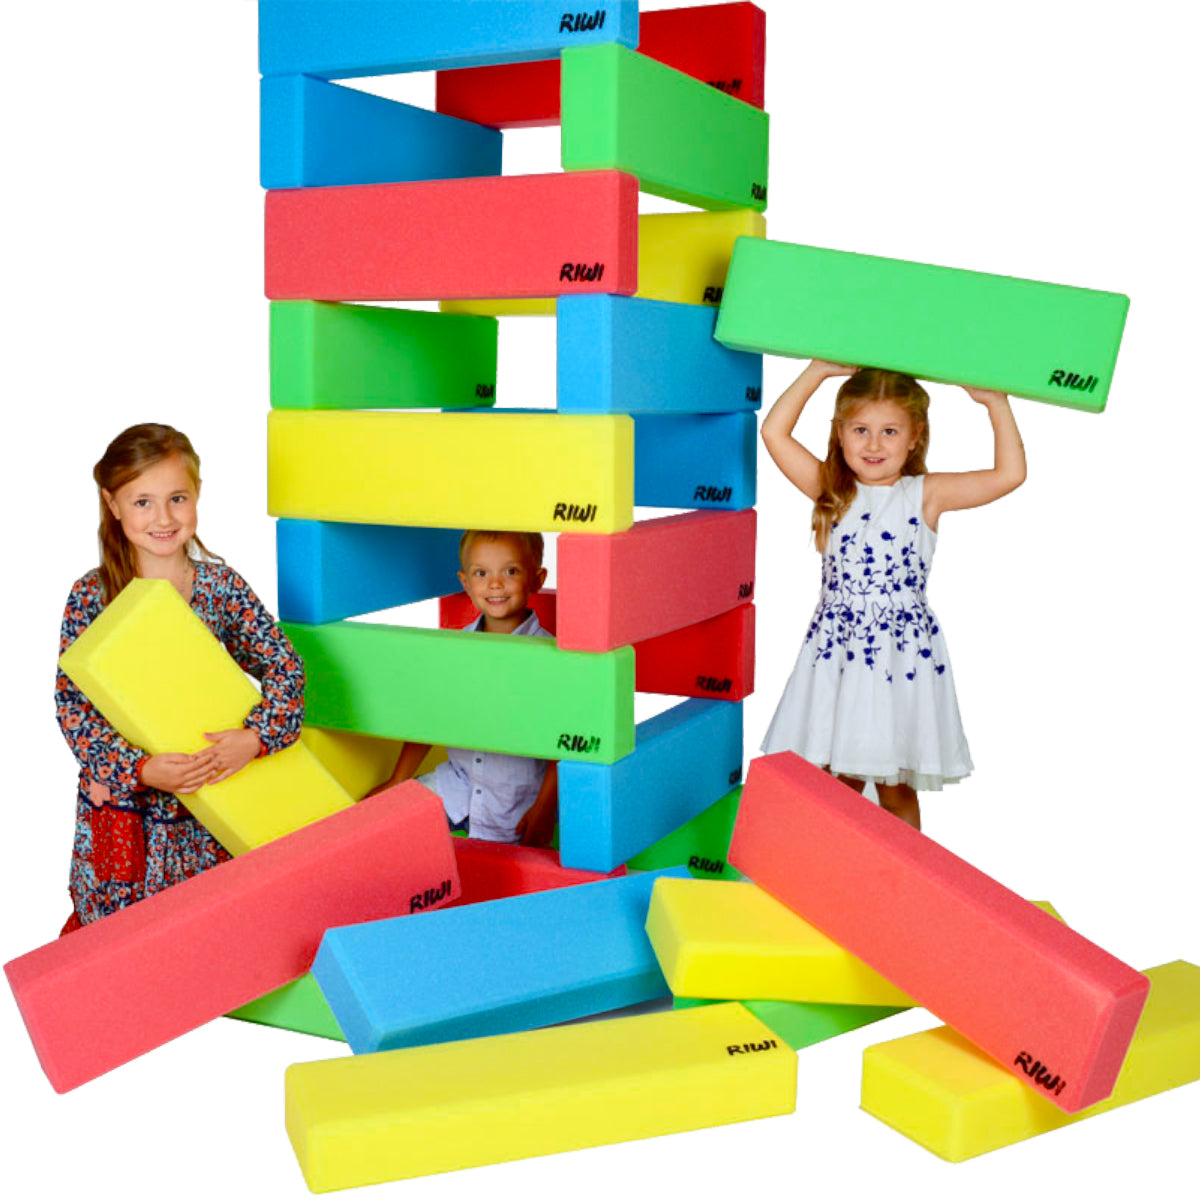 FOAM BLOCKS SHOW - Just Fun For Kids